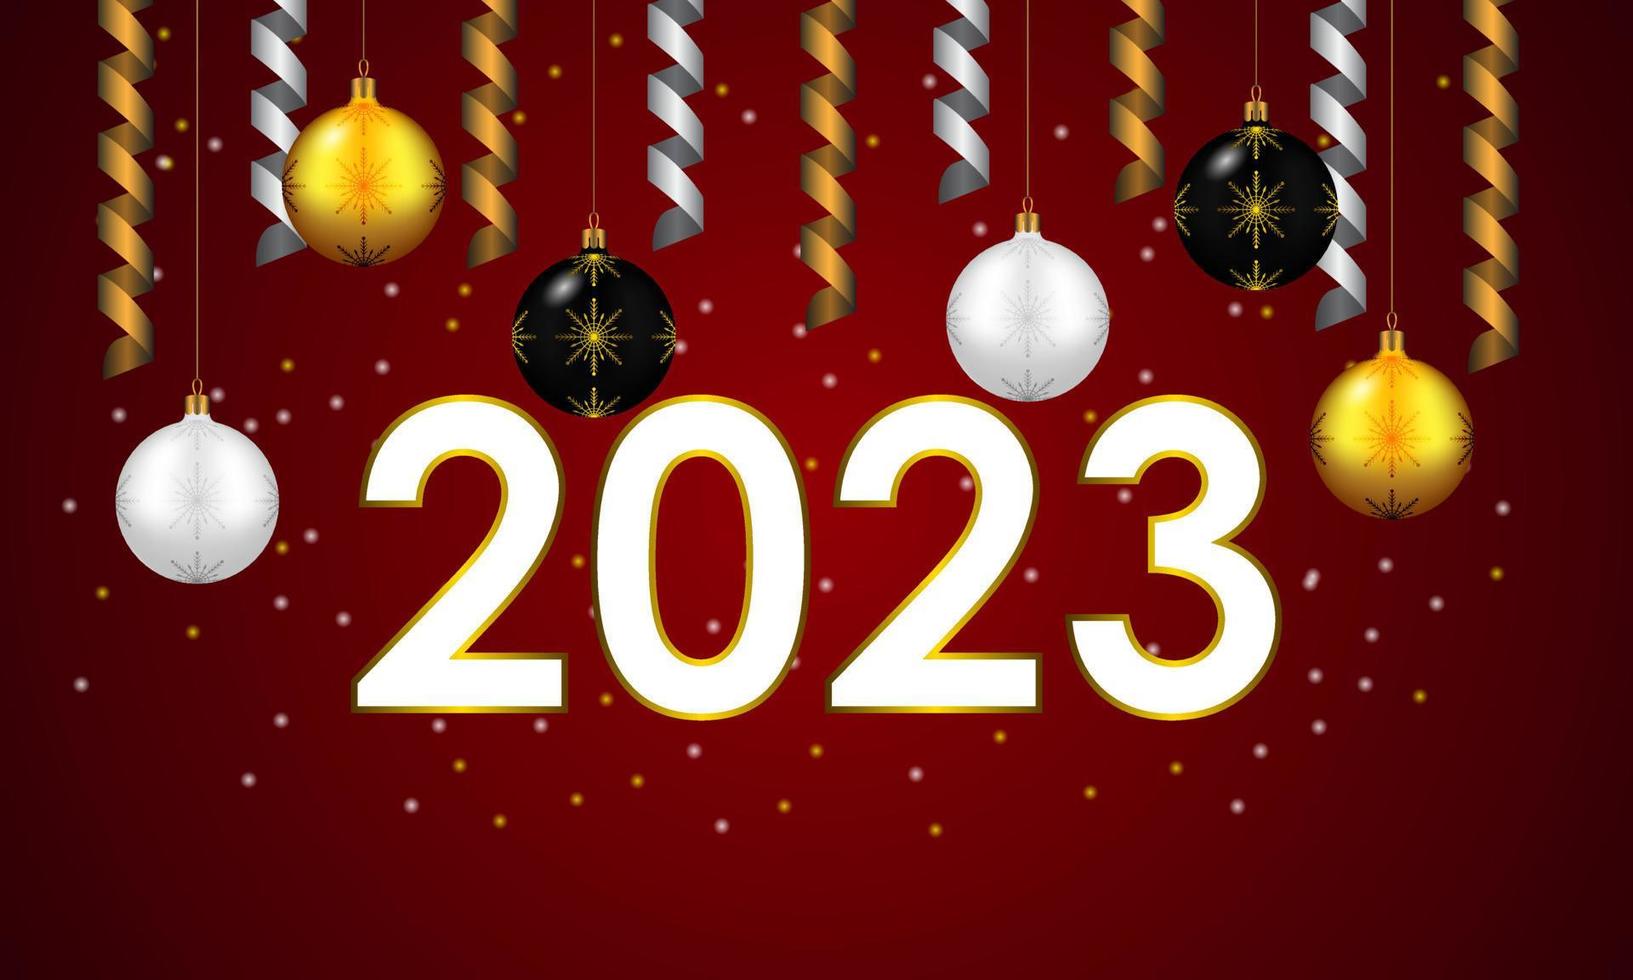 frohes neues jahr 2023. festliches design mit weihnachtsschmuck, kugeln und streamer vektor